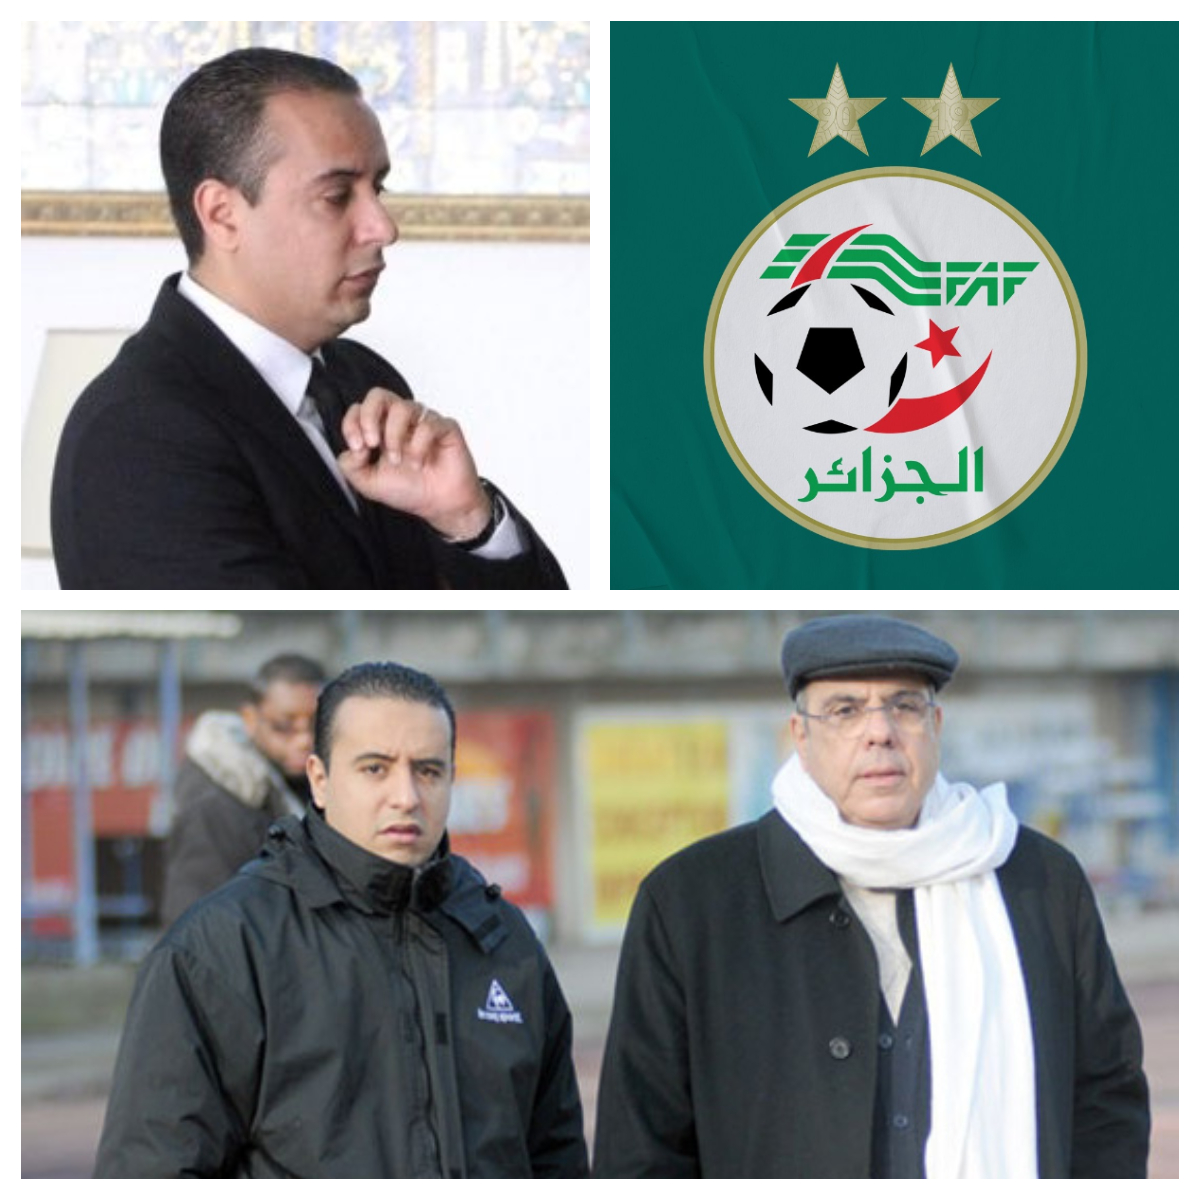 وليد صادي يعلن عن رغبته في الترشح لرئاسة الاتحاد الجزائري لكرة القدم